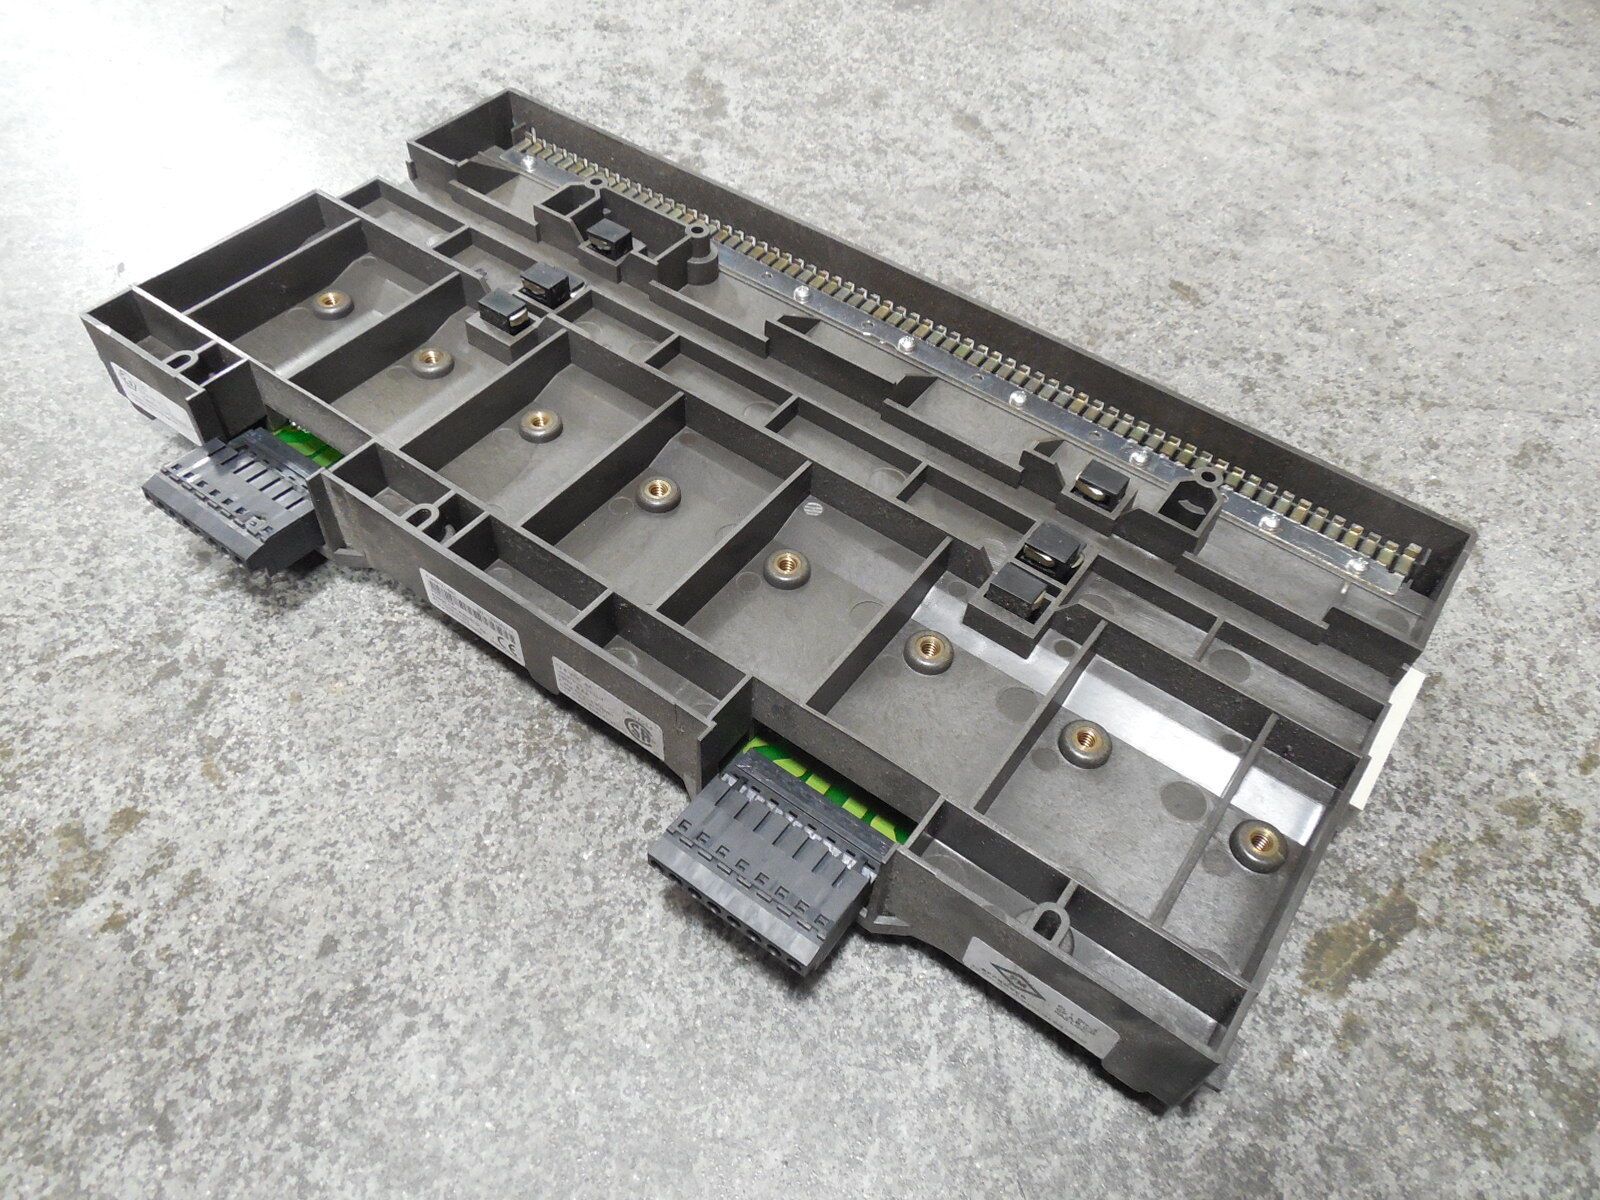 (KJ4001X1-BE1 背板模块)正品 EMERSON 艾默生的模块 全新原装进口现货供应